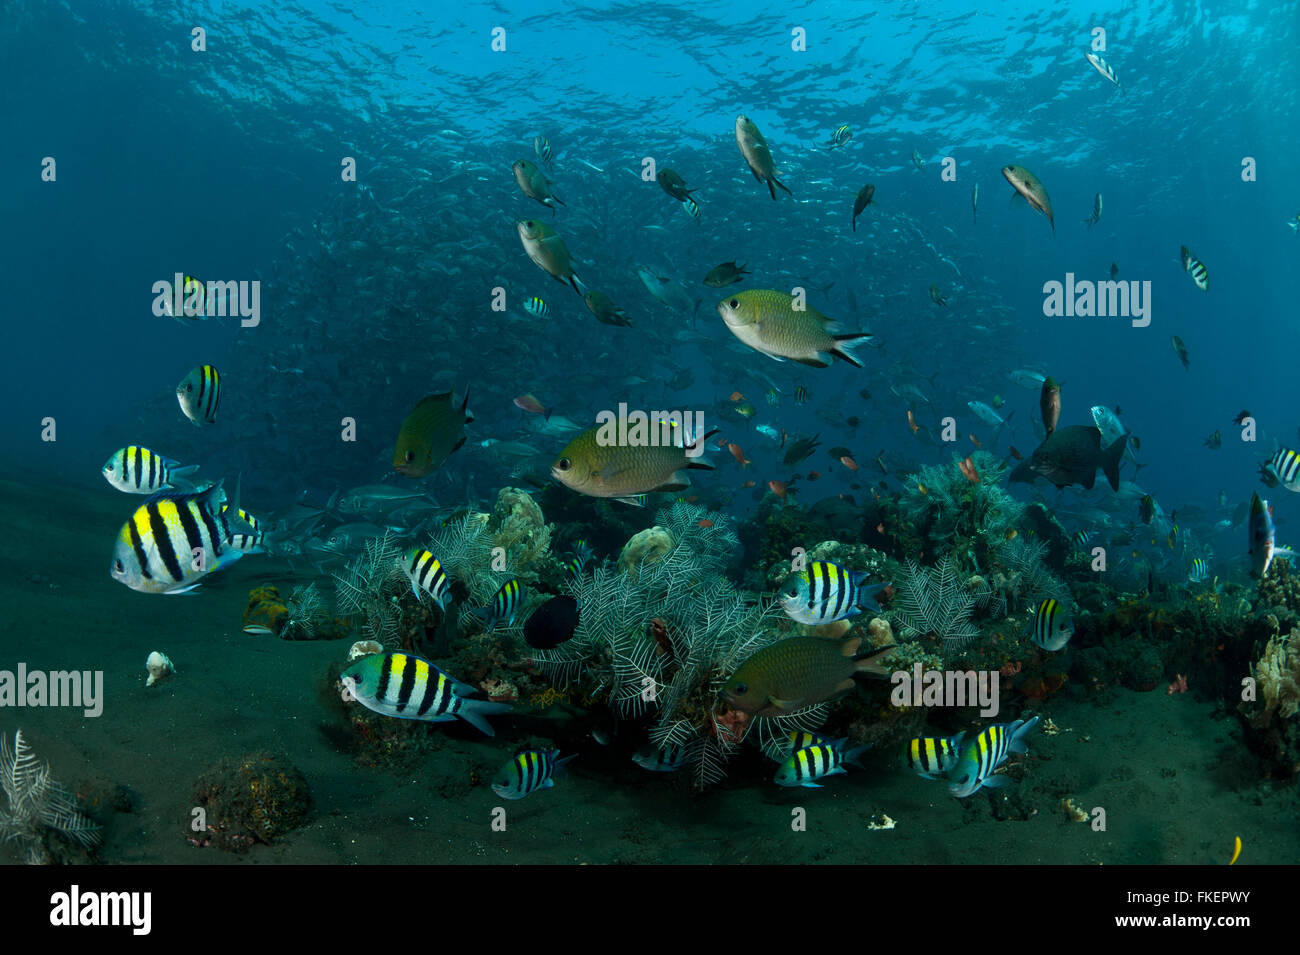 Une variété de poissons de récif et de castagnoles noires abondent autour de la barrière de corail avec la scolarisation les carangues obèse (Caranx sexfasciatus) dans l'arrière-plan. Banque D'Images